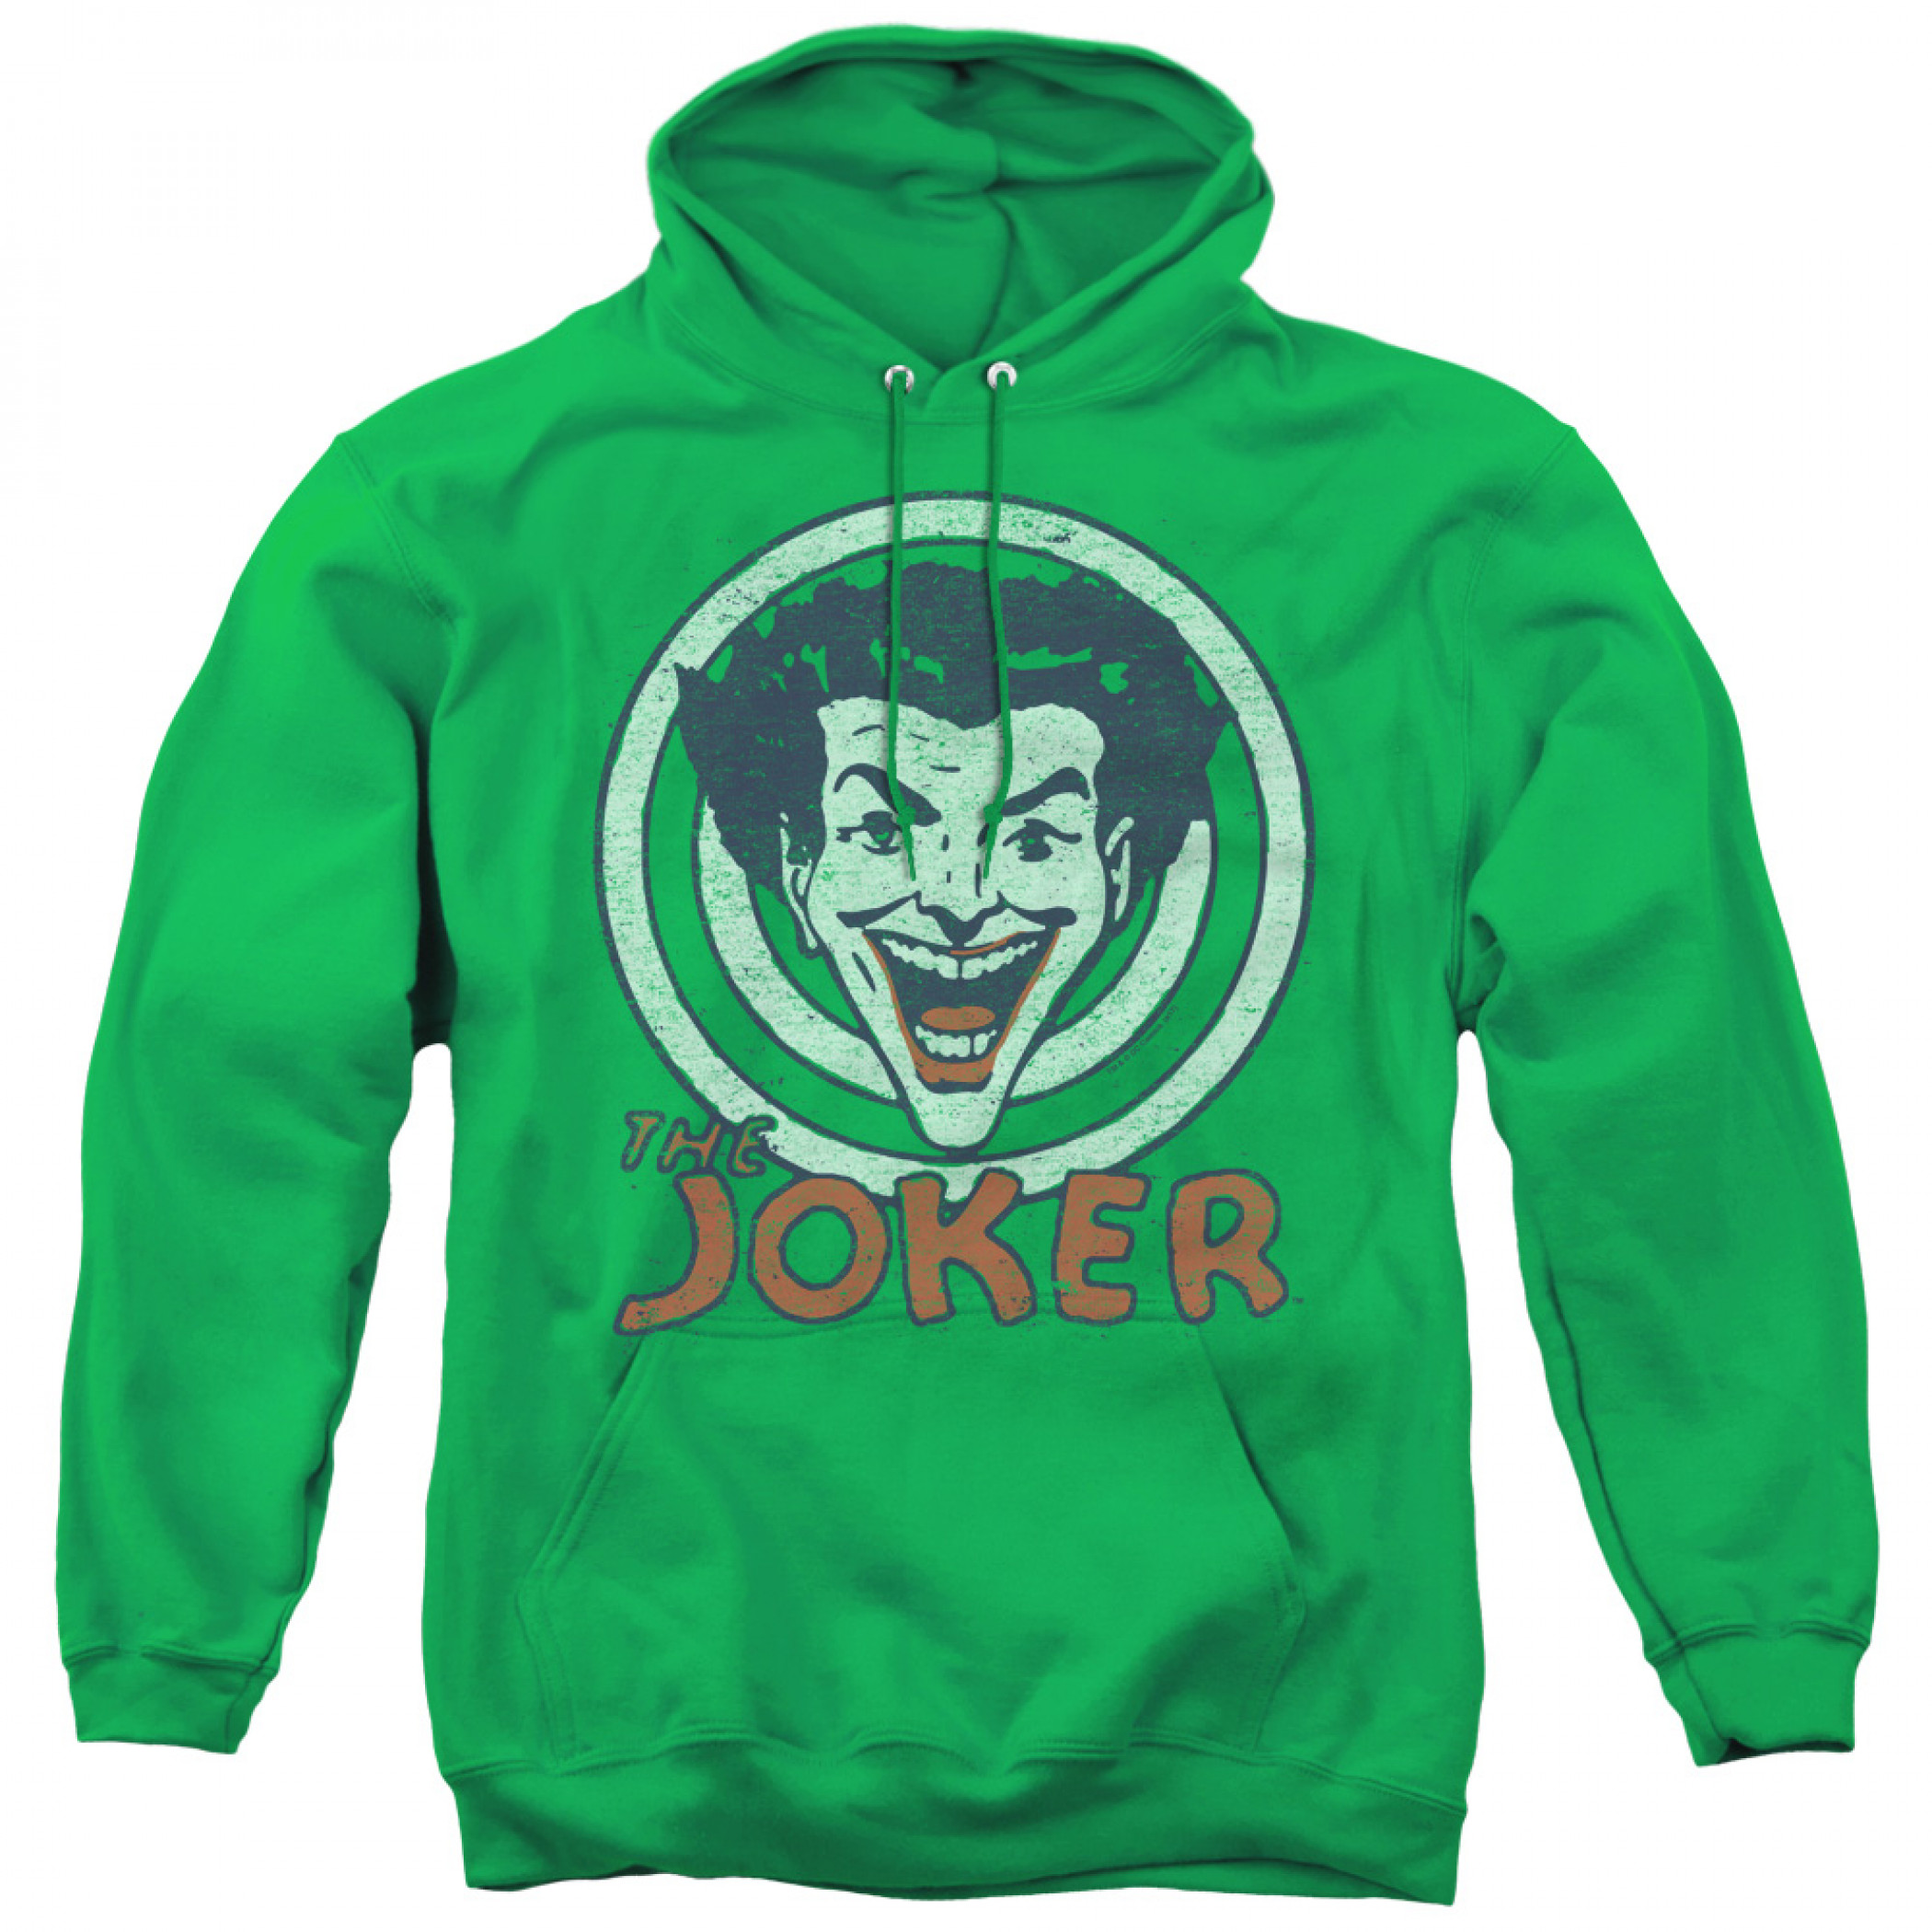 The Joker Vintage Style Green Hoodie